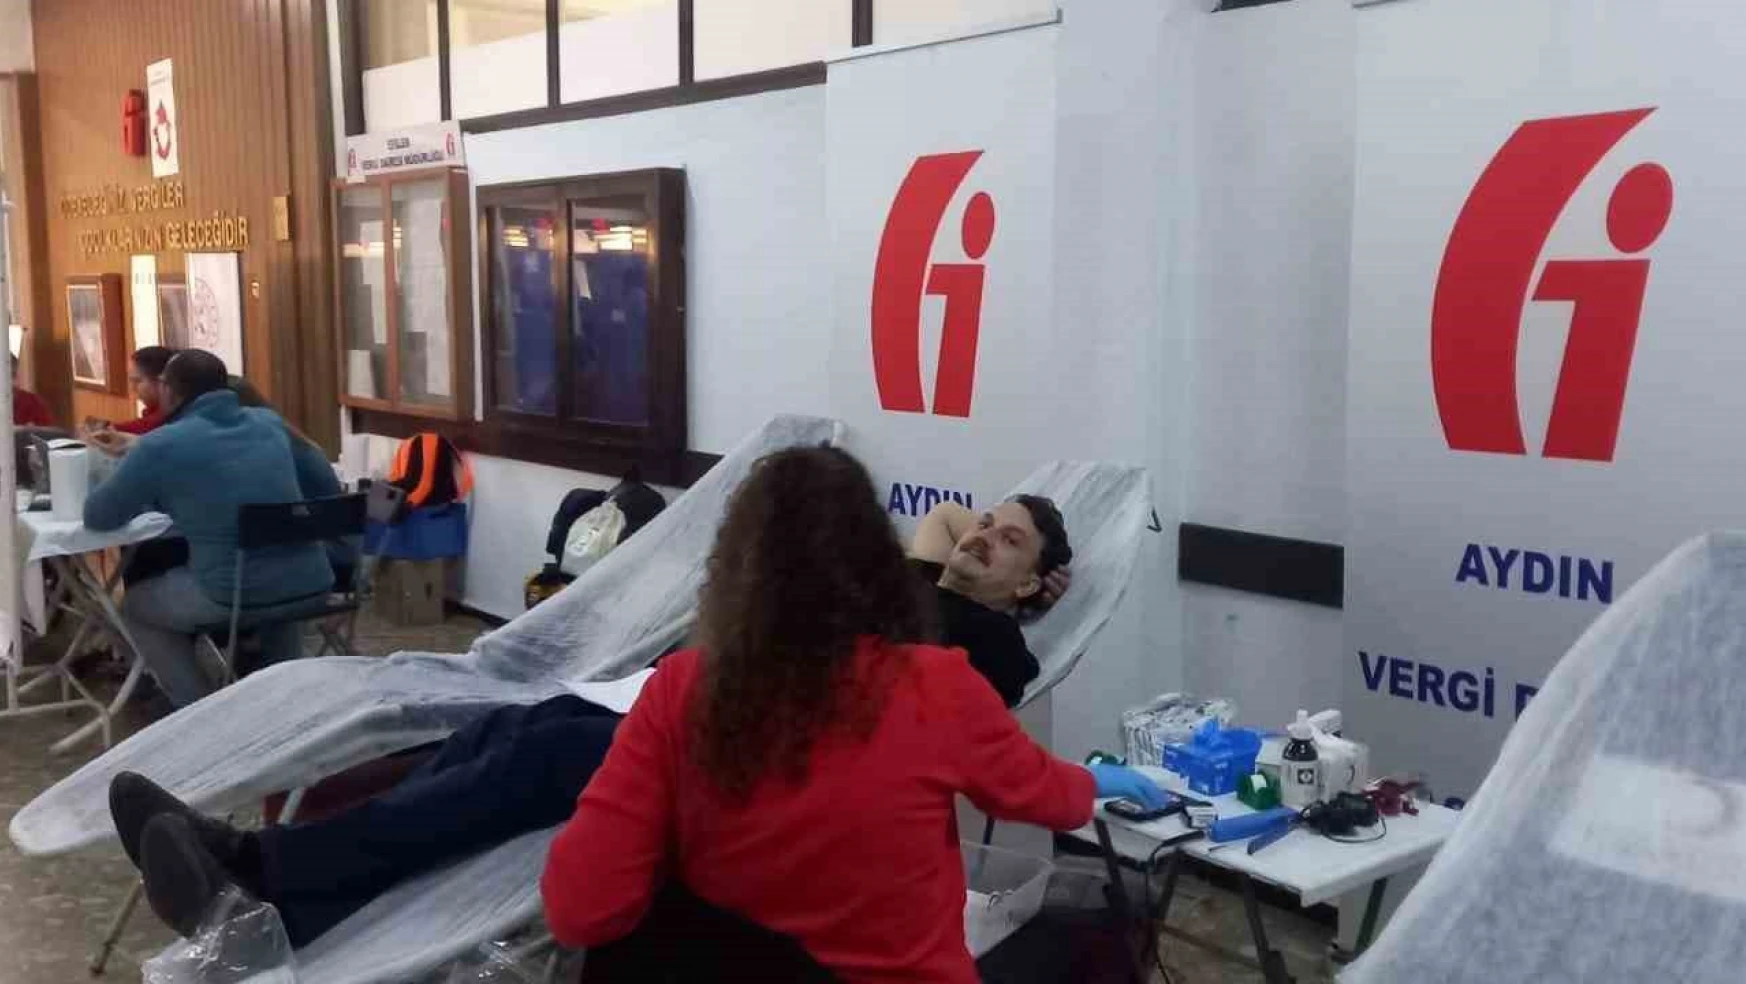 Aydın'da vergi ödemeye gelenler kan bağışı yapıyor